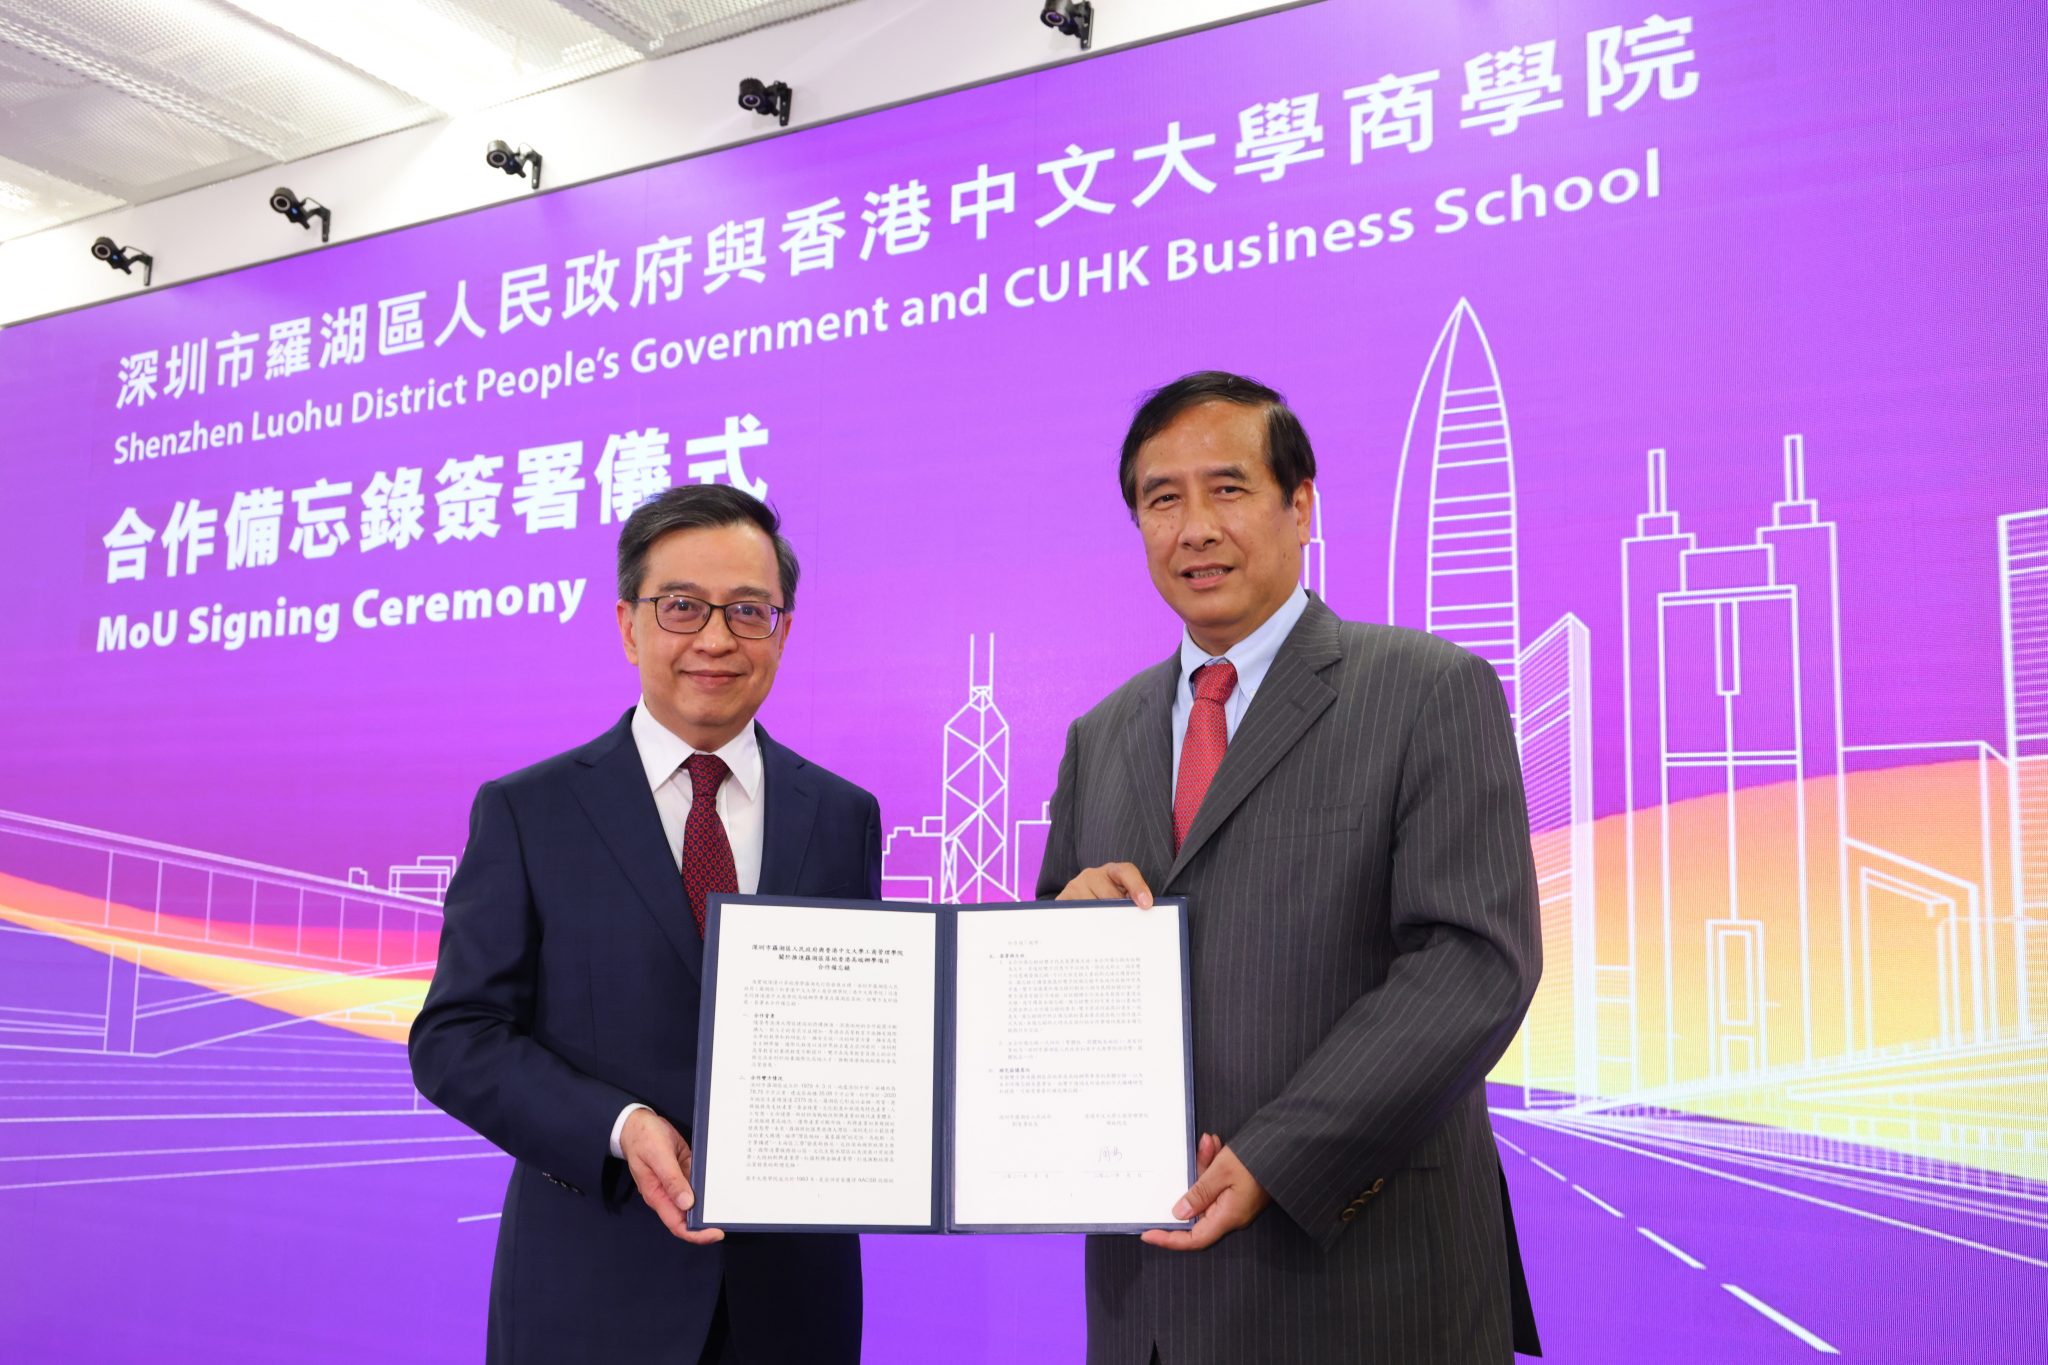 【教育頻道 熱點新聞】香港中文大學商學院與深圳市羅湖區人民政府簽署合作備忘錄